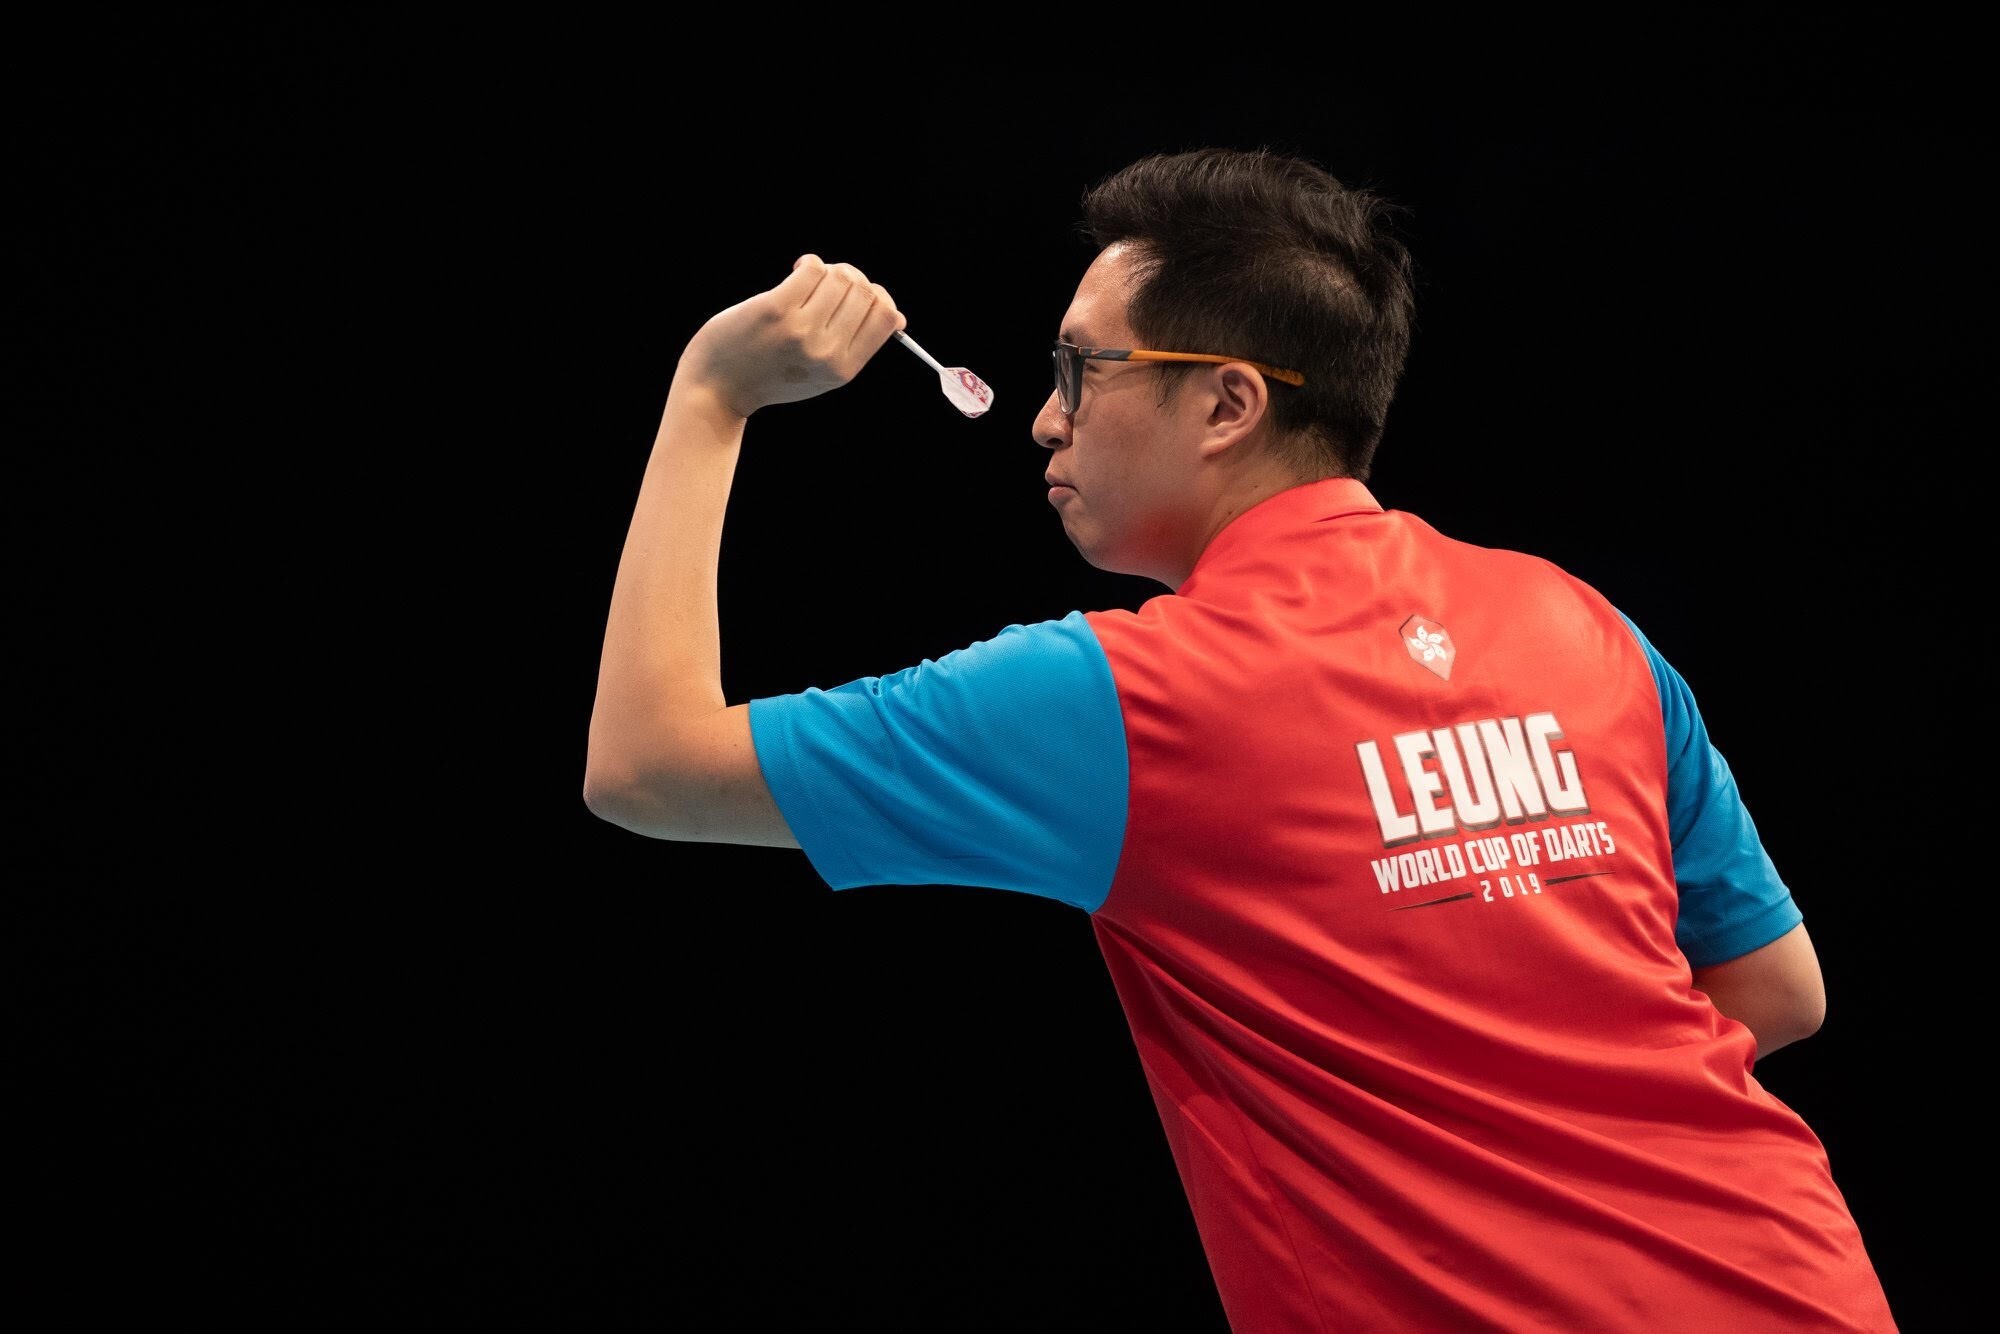 Kevin Leung Kai-fan representing Hong Kong in darts. Photo: Handout